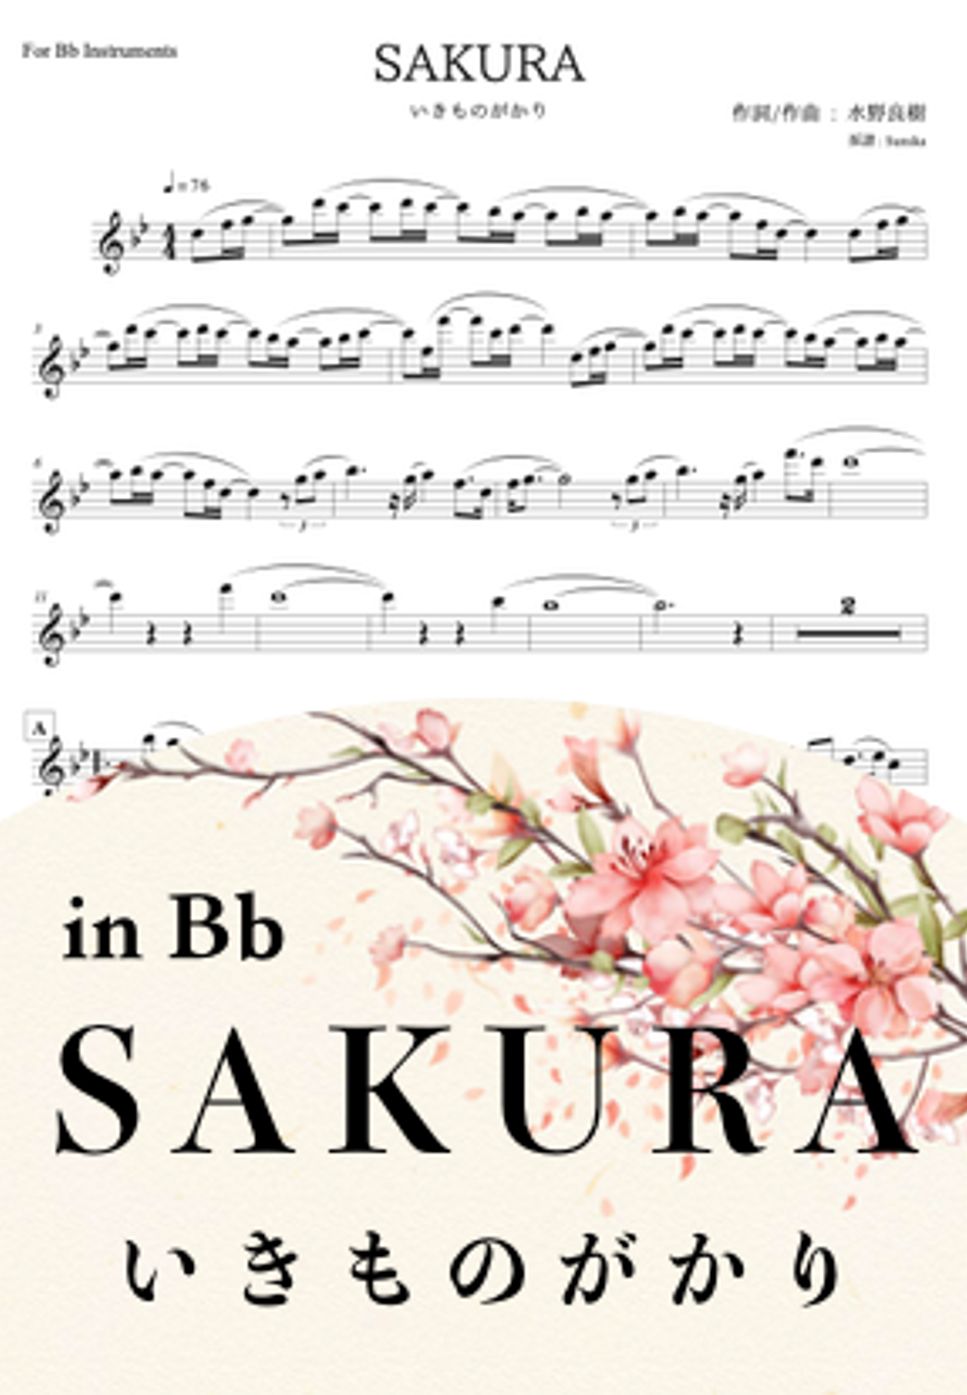 いきものがかり - SAKURA (in Bb) by Sumika